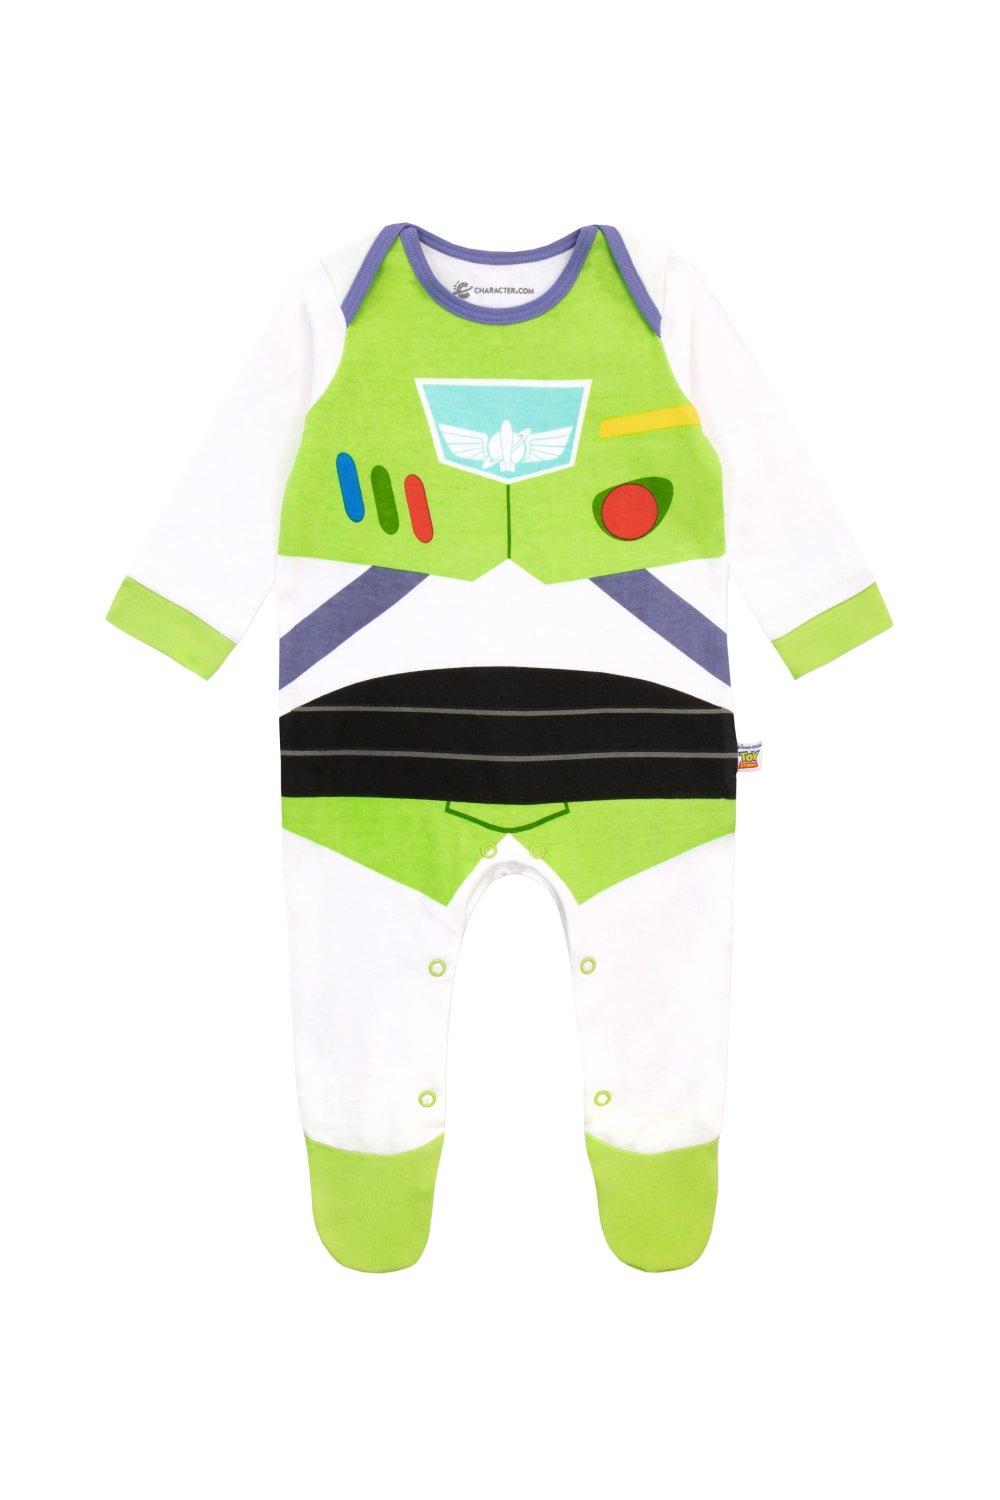 Baby Toy Story Buzz Lightyear Sleepsuit